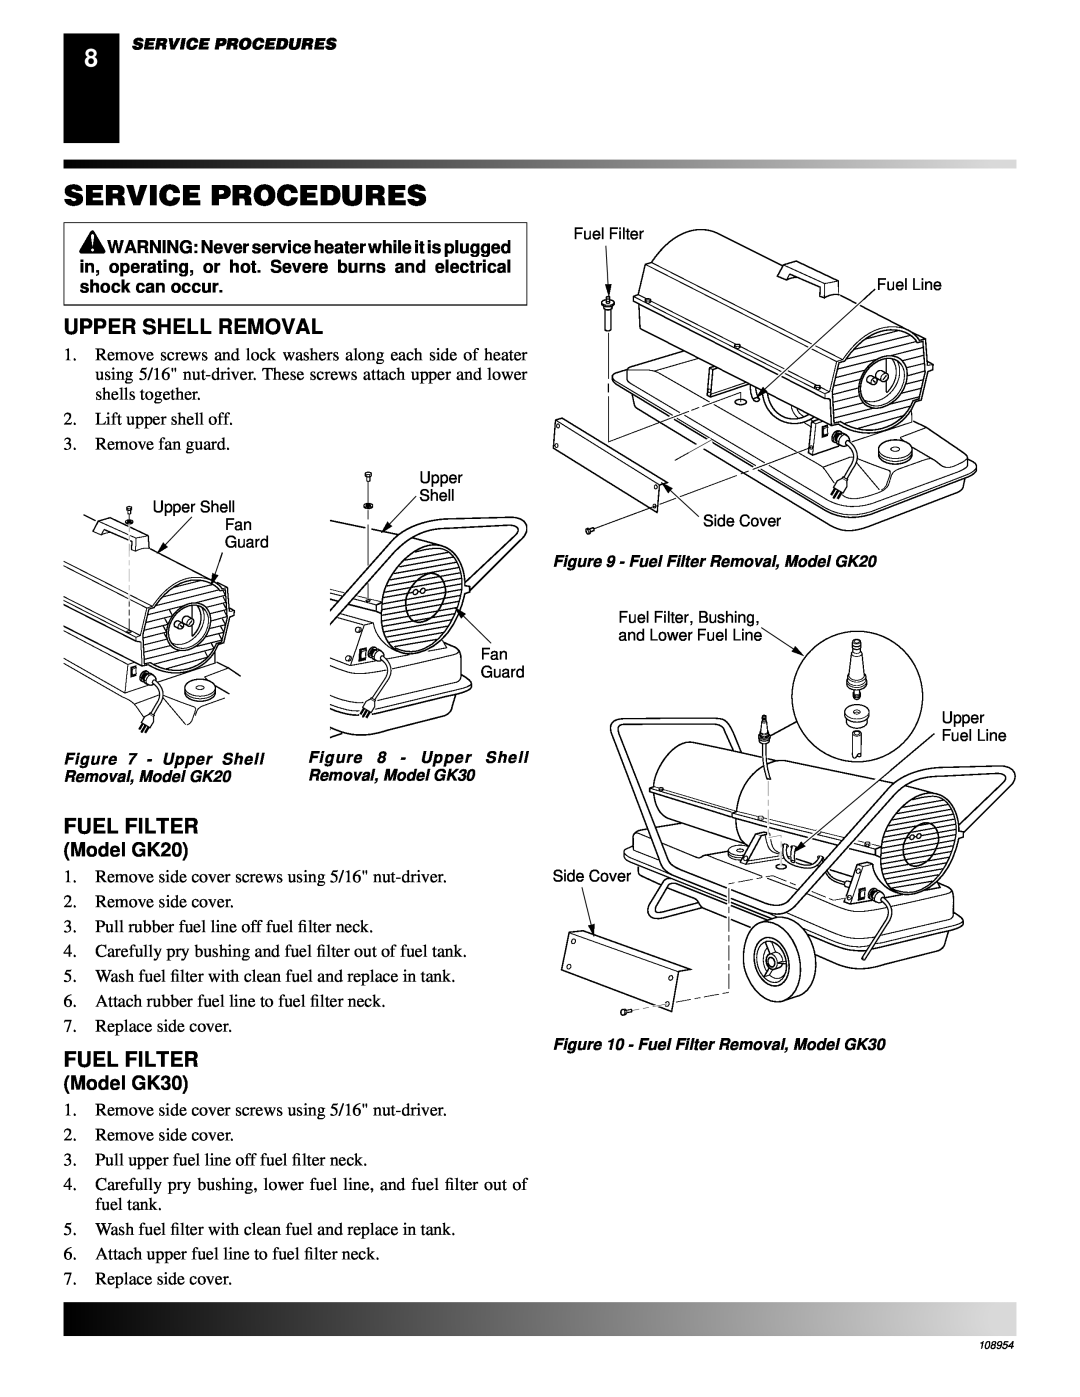 Desa owner manual Service Procedures, Upper Shell Removal, Fuel Filter, Model GK20, Model GK30 